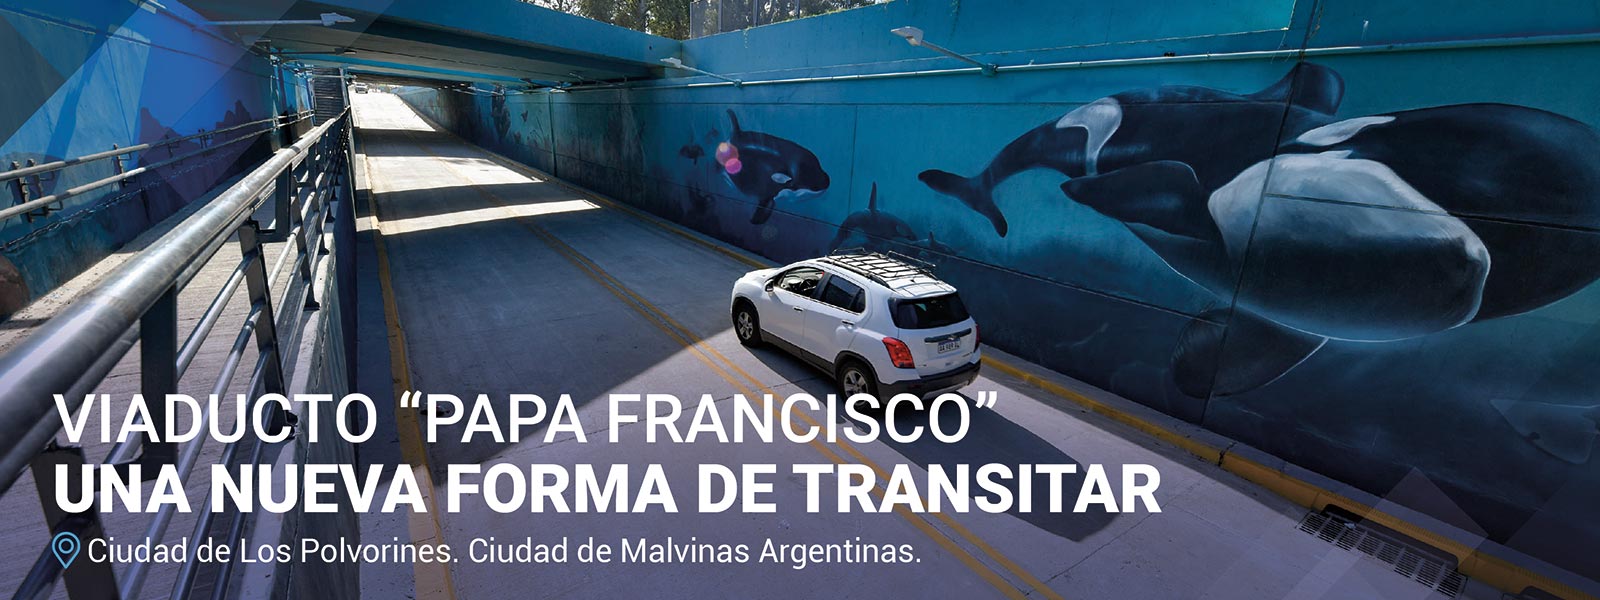 Viaducto Malvinas Argentinas